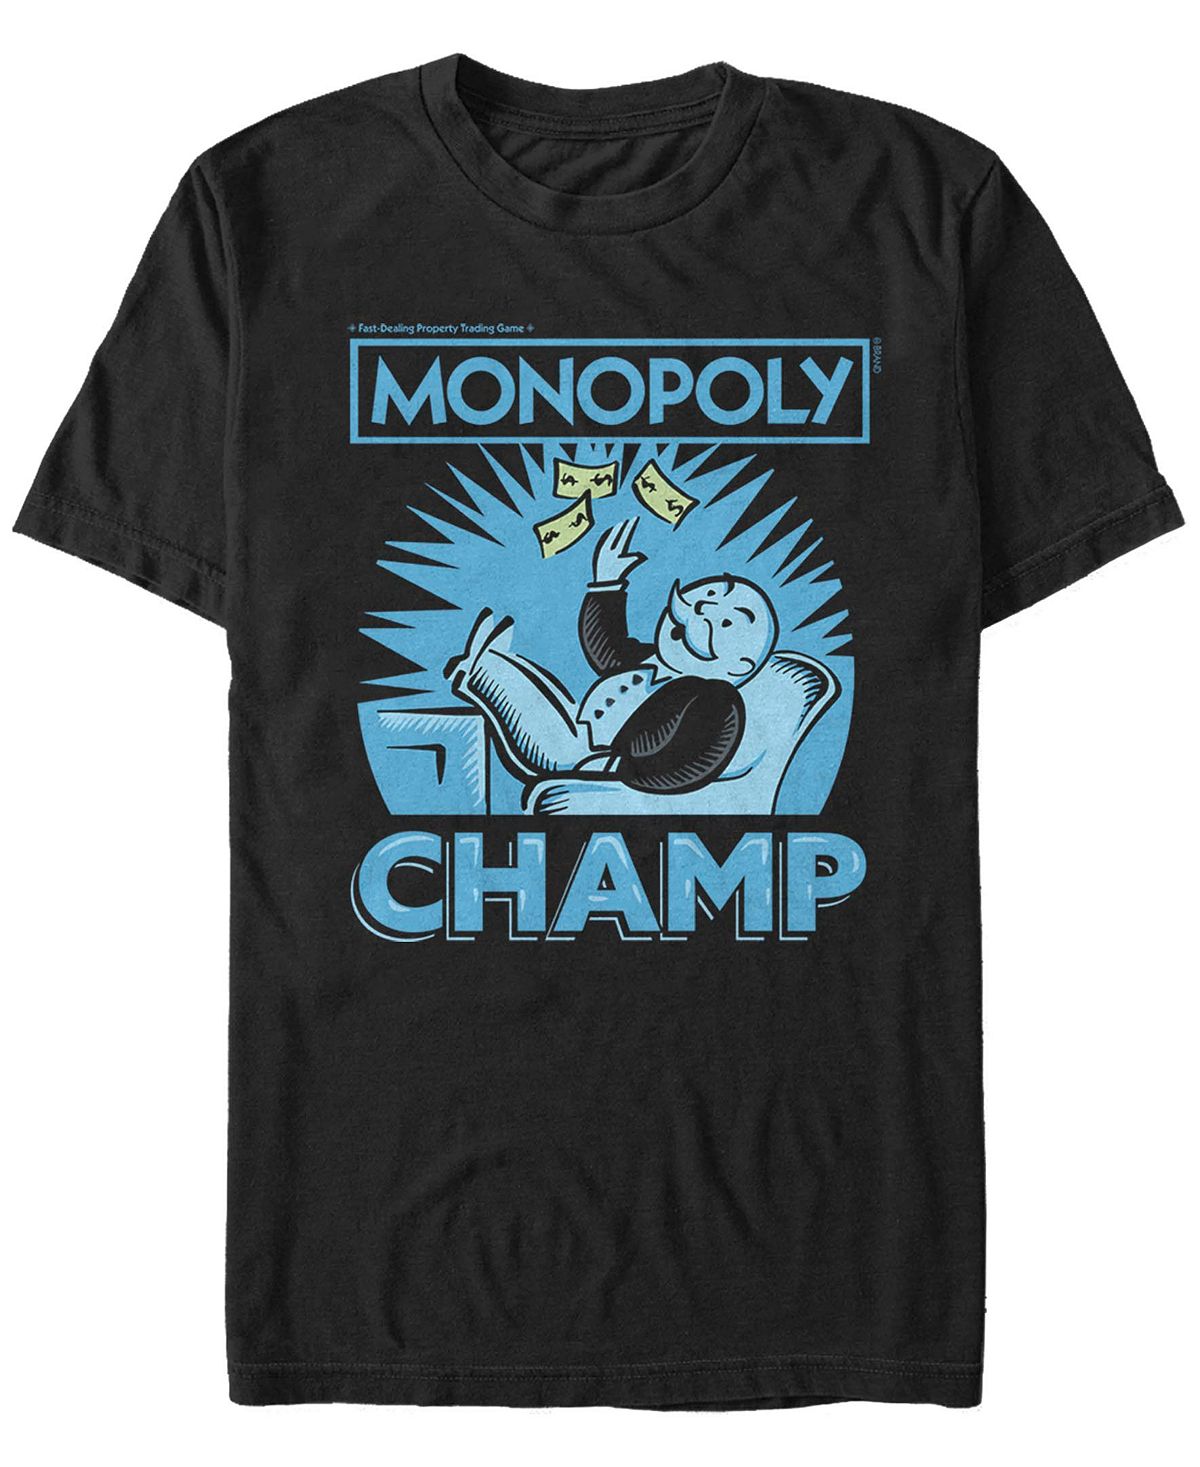 Мужская футболка с коротким рукавом monopoly champ money toss Fifth Sun, черный